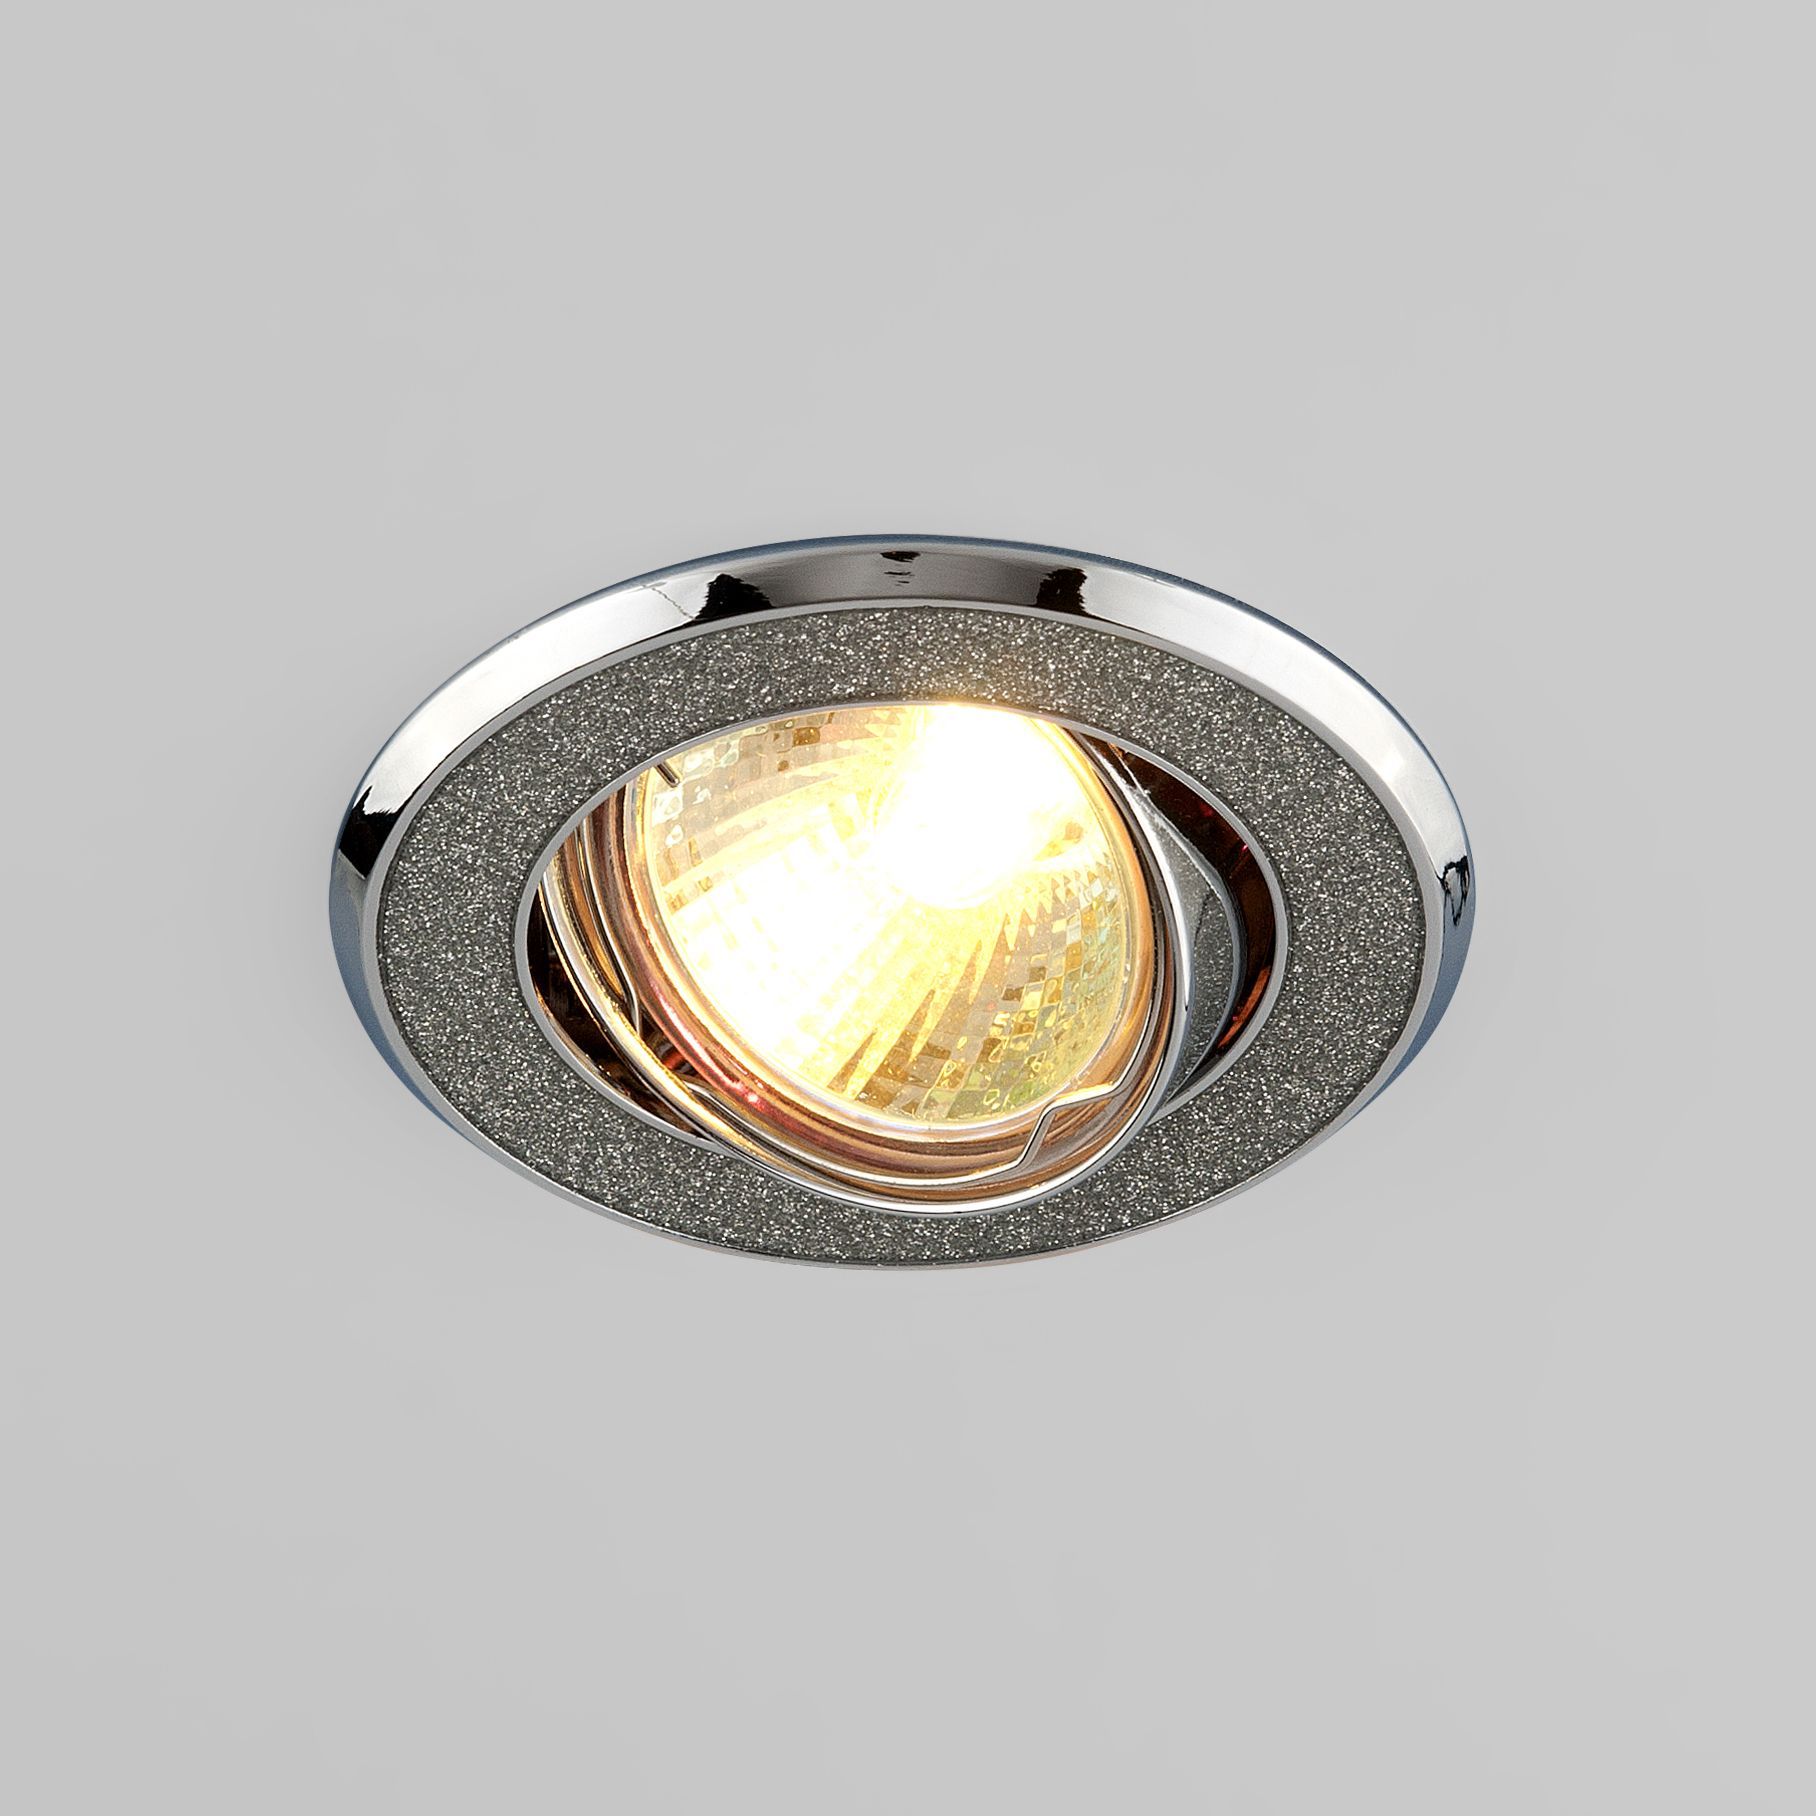 Встраиваемый точечный светильник 611 MR16 SL серебряный блеск/хром. Фото 1